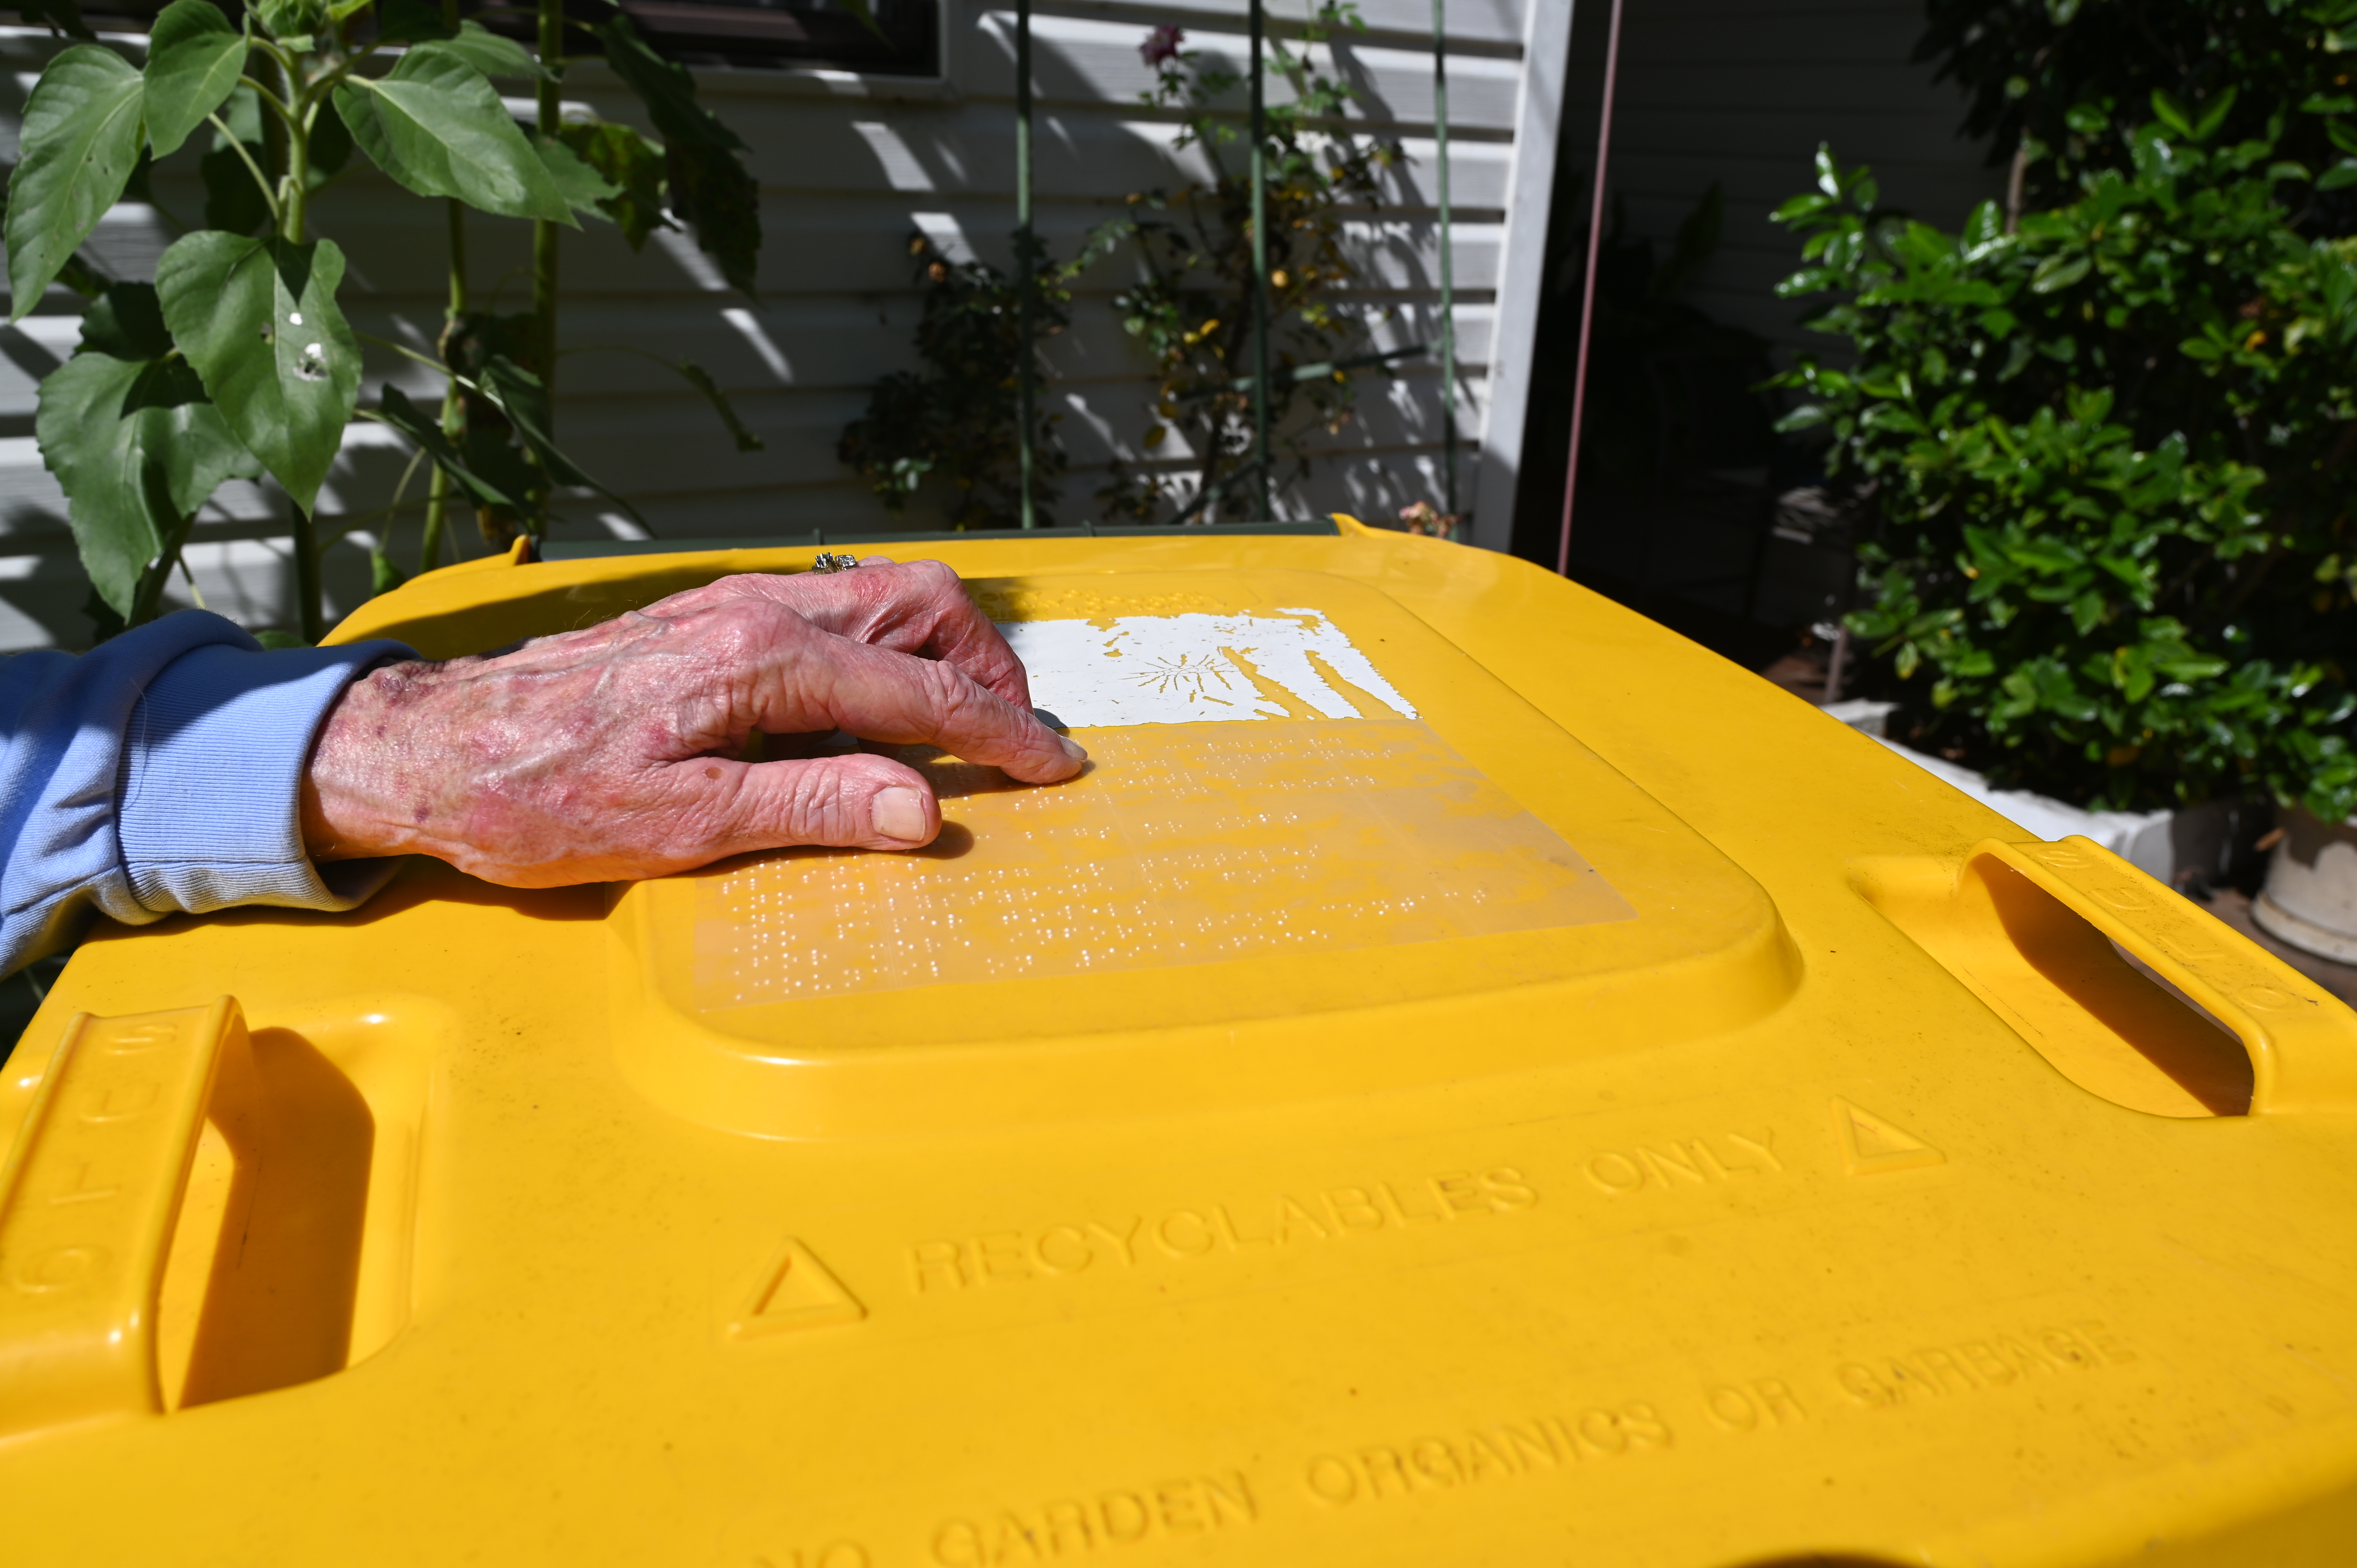 Recycling bin with braille bin label